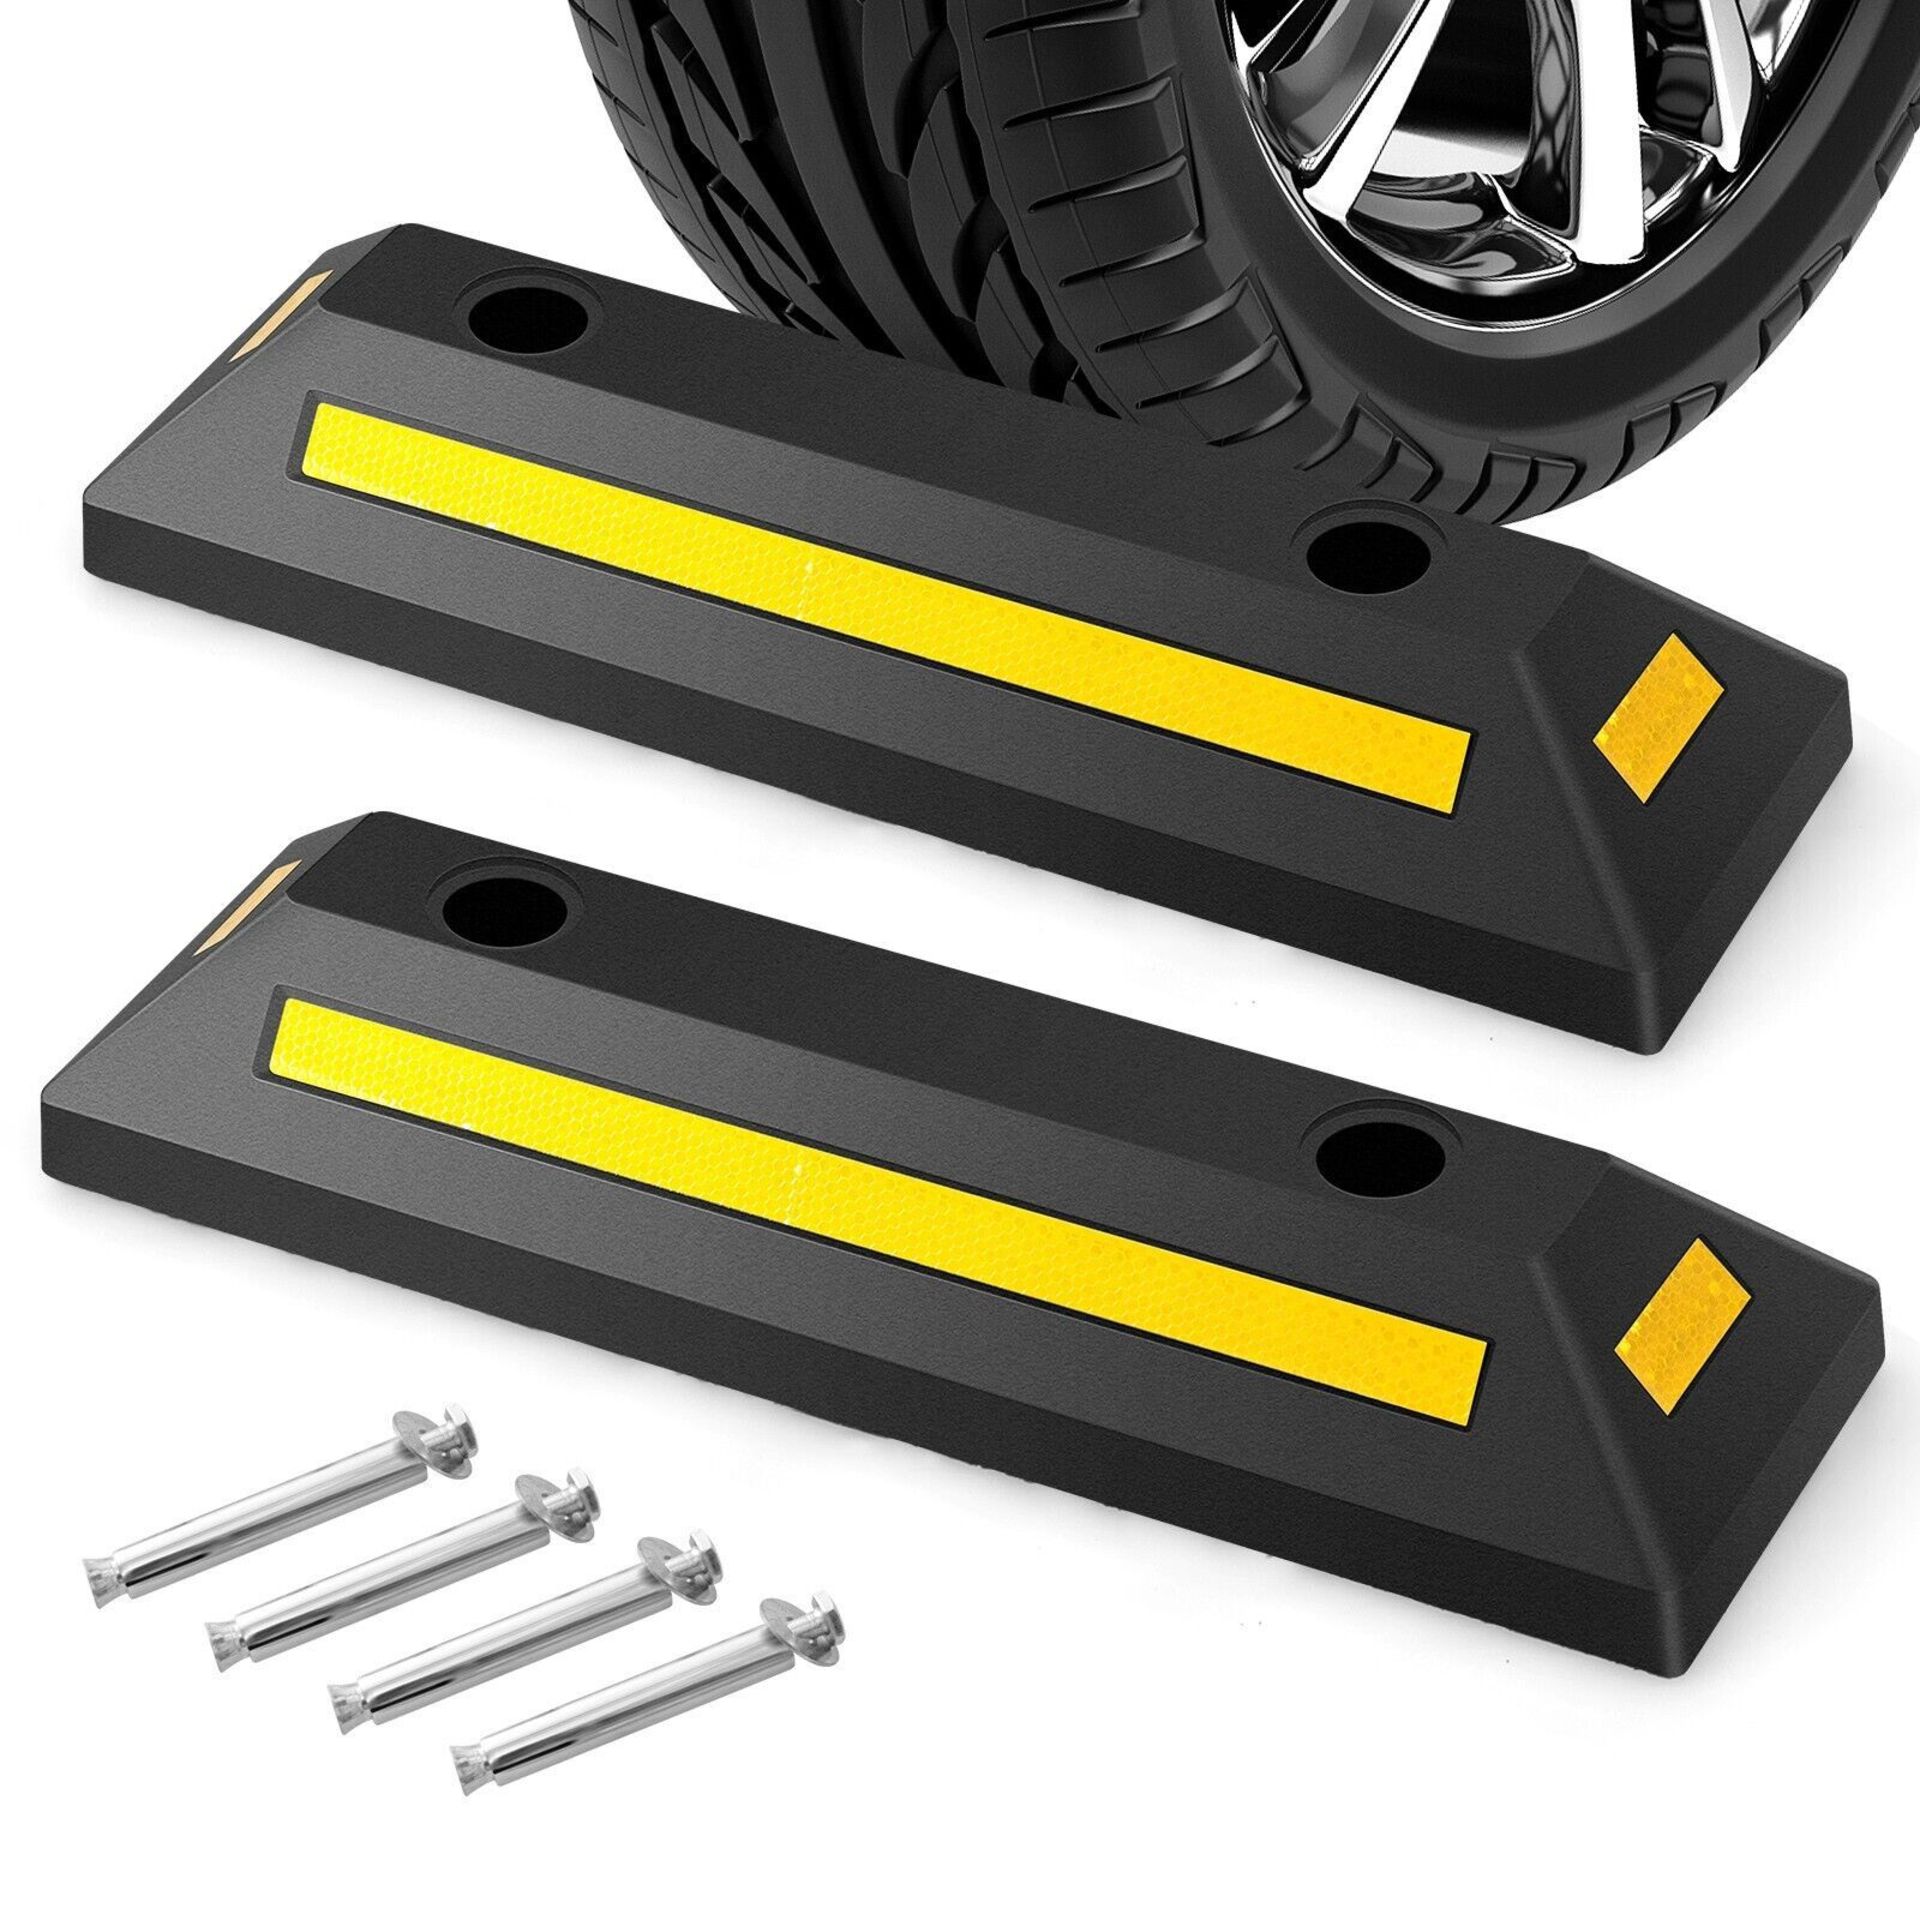 Garage Vehicle Floor Stopper 2 Pack Durable &Heavy Duty Rubber Wheel Stopper 4T. - ER26